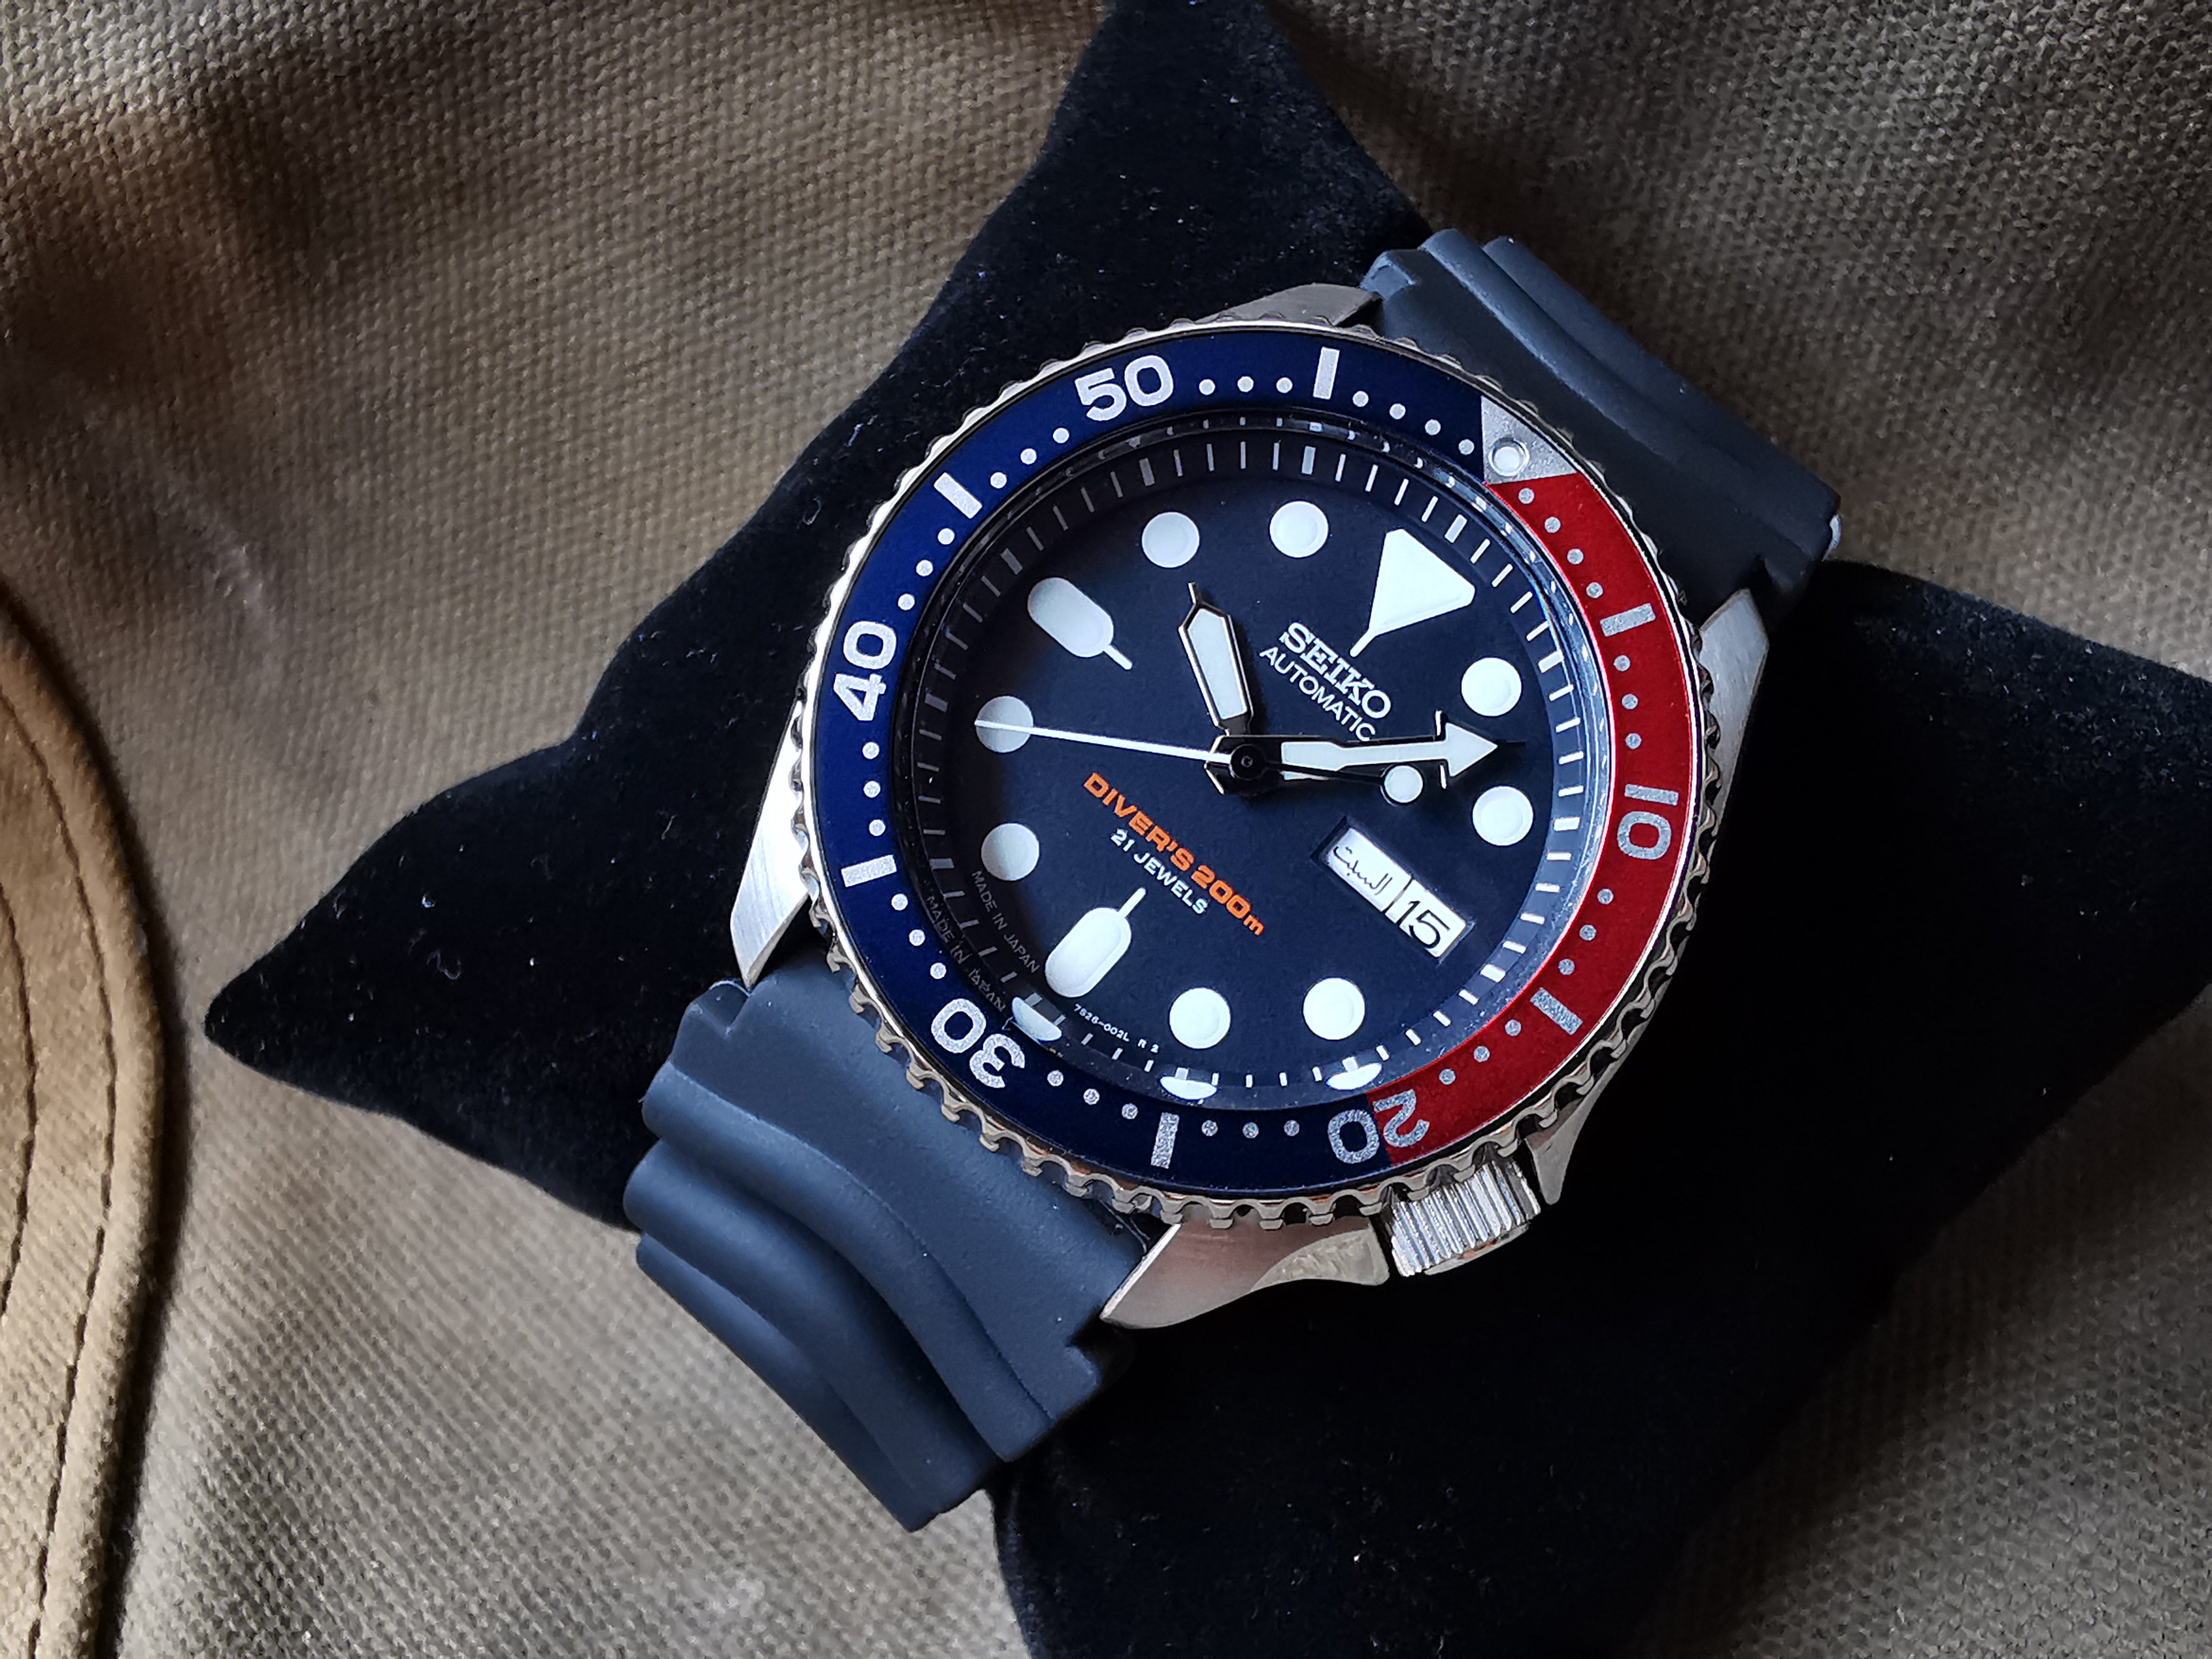 FS: BN Made in Japan Seiko SKX009J Diver Watch | WatchCharts